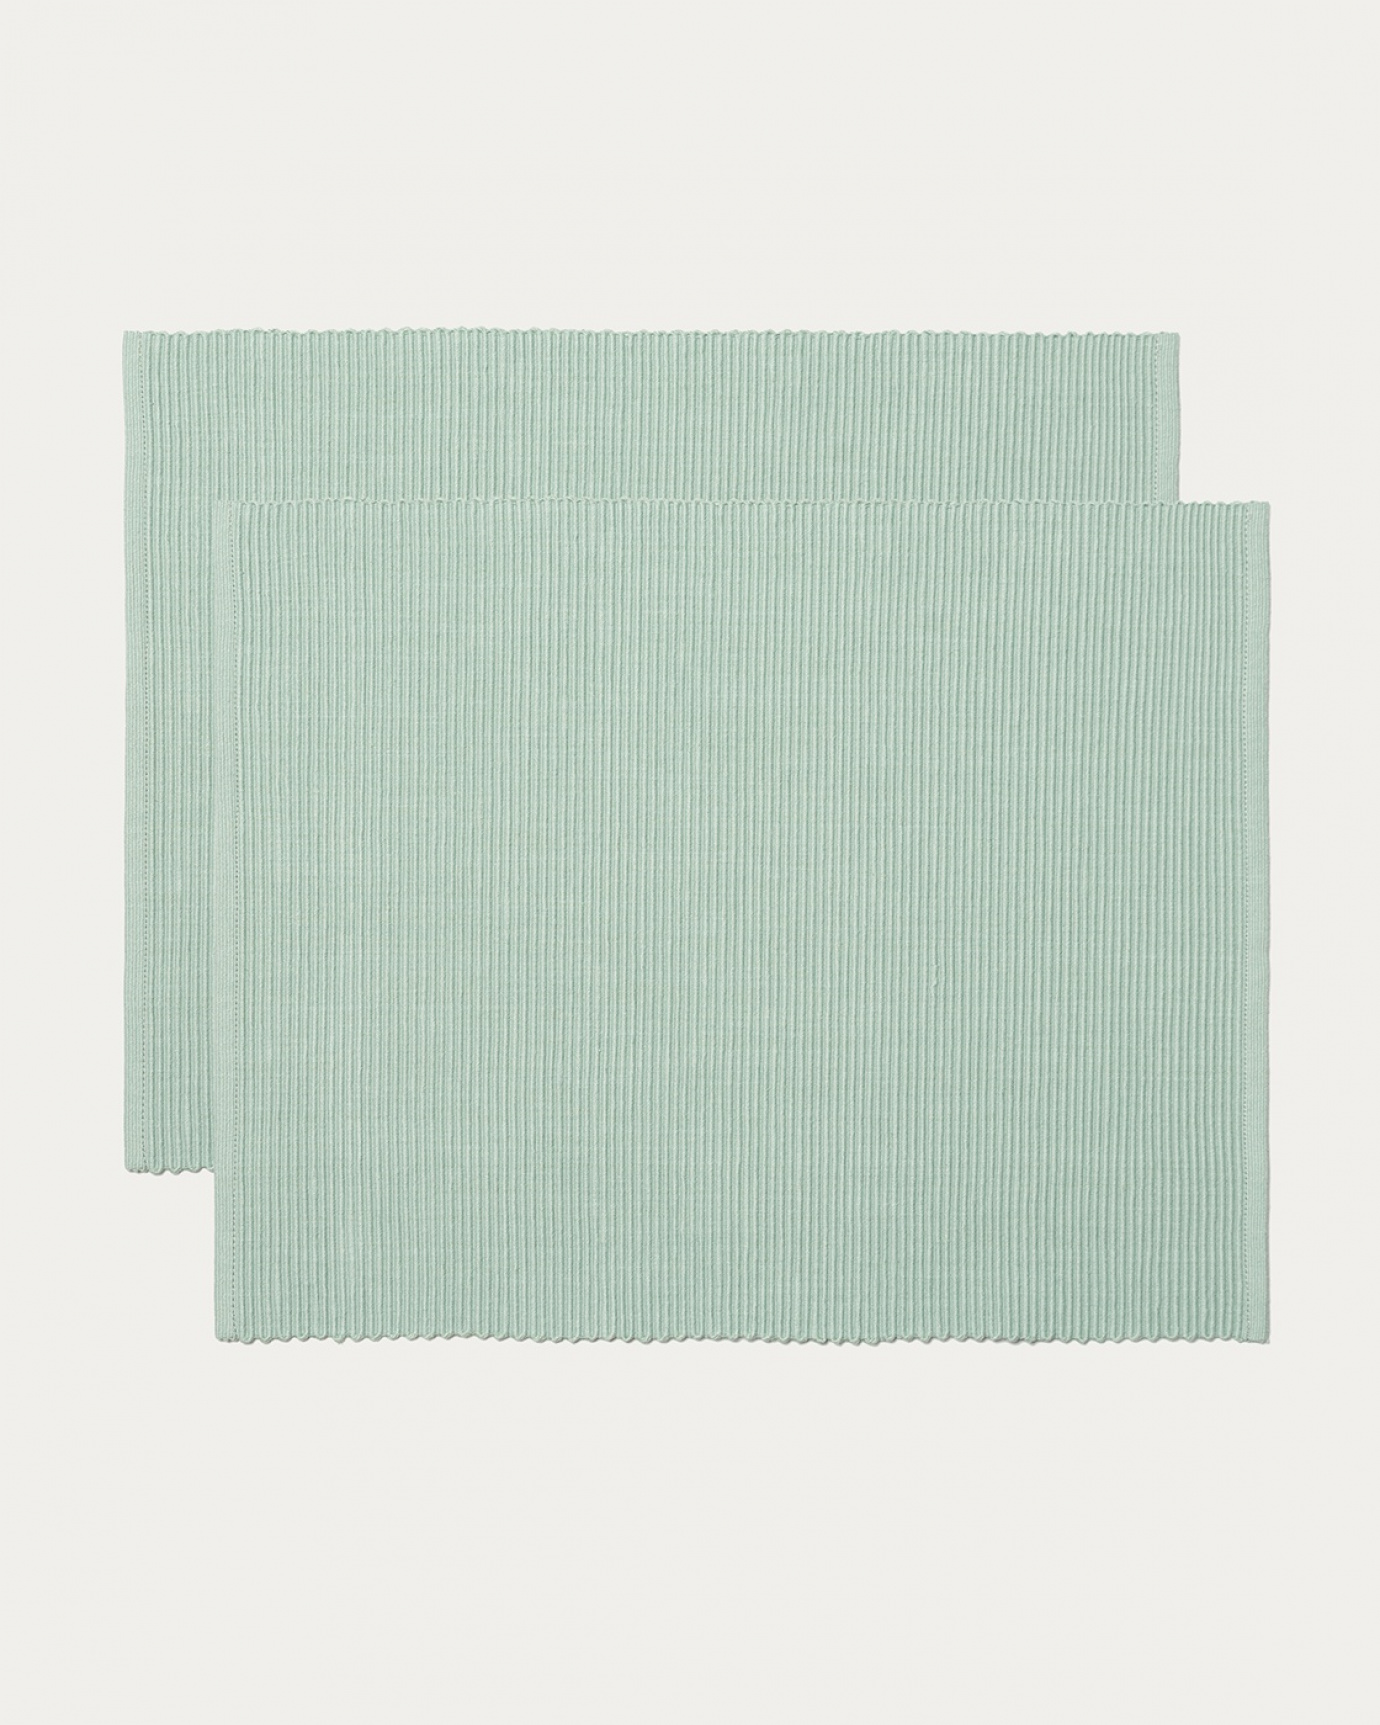 Image du produit set de table UNI vert clair glacé en coton doux de qualité côtelée de LINUM DESIGN. Taille 35 x 46 cm et vendu en lot de 2.